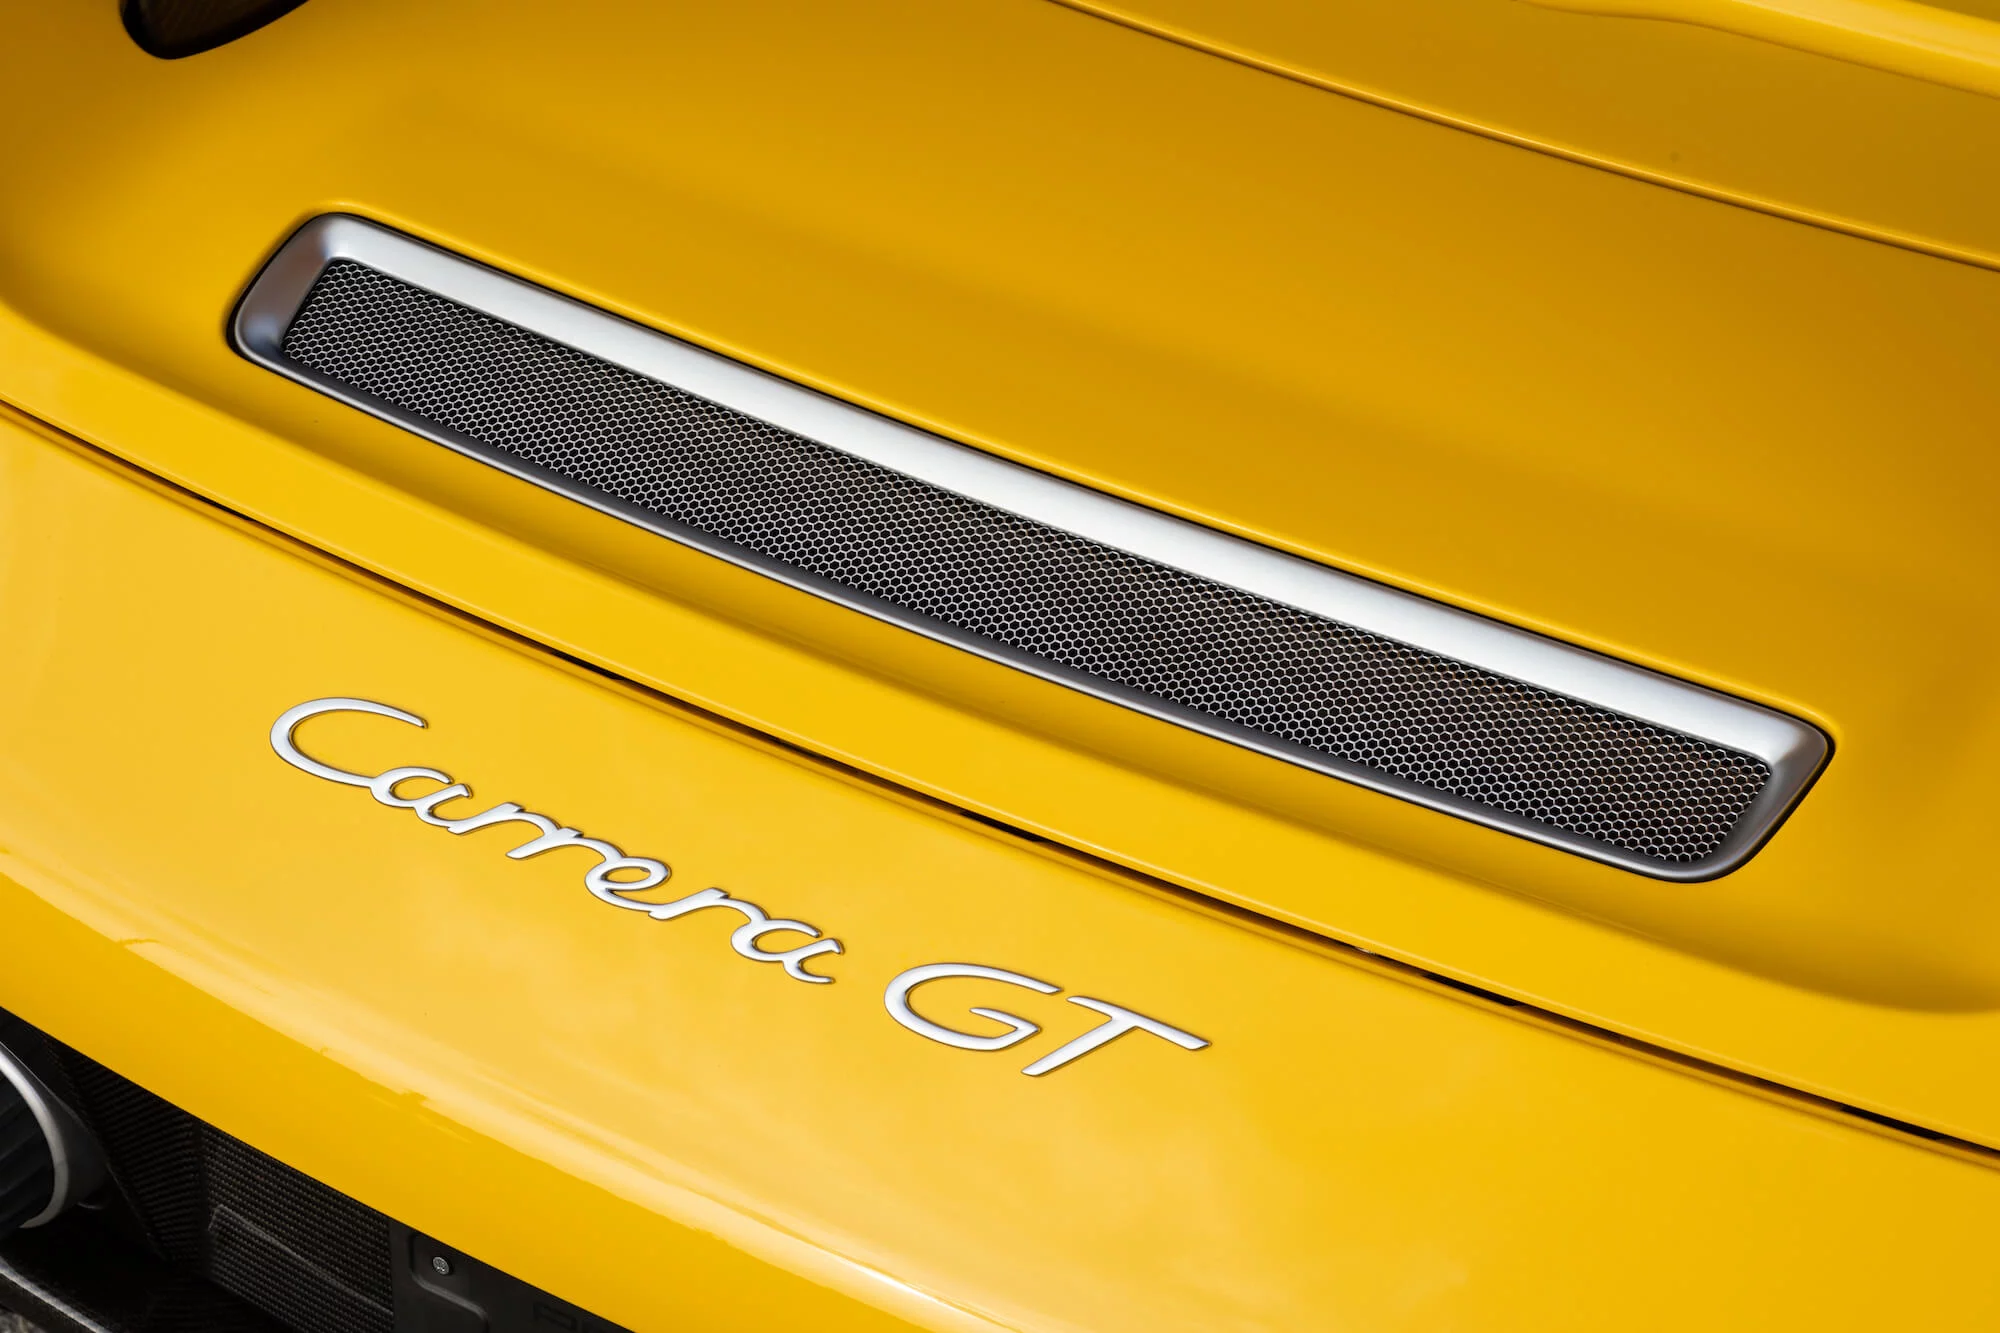 Fayence Yellow Porsche Carrera GT